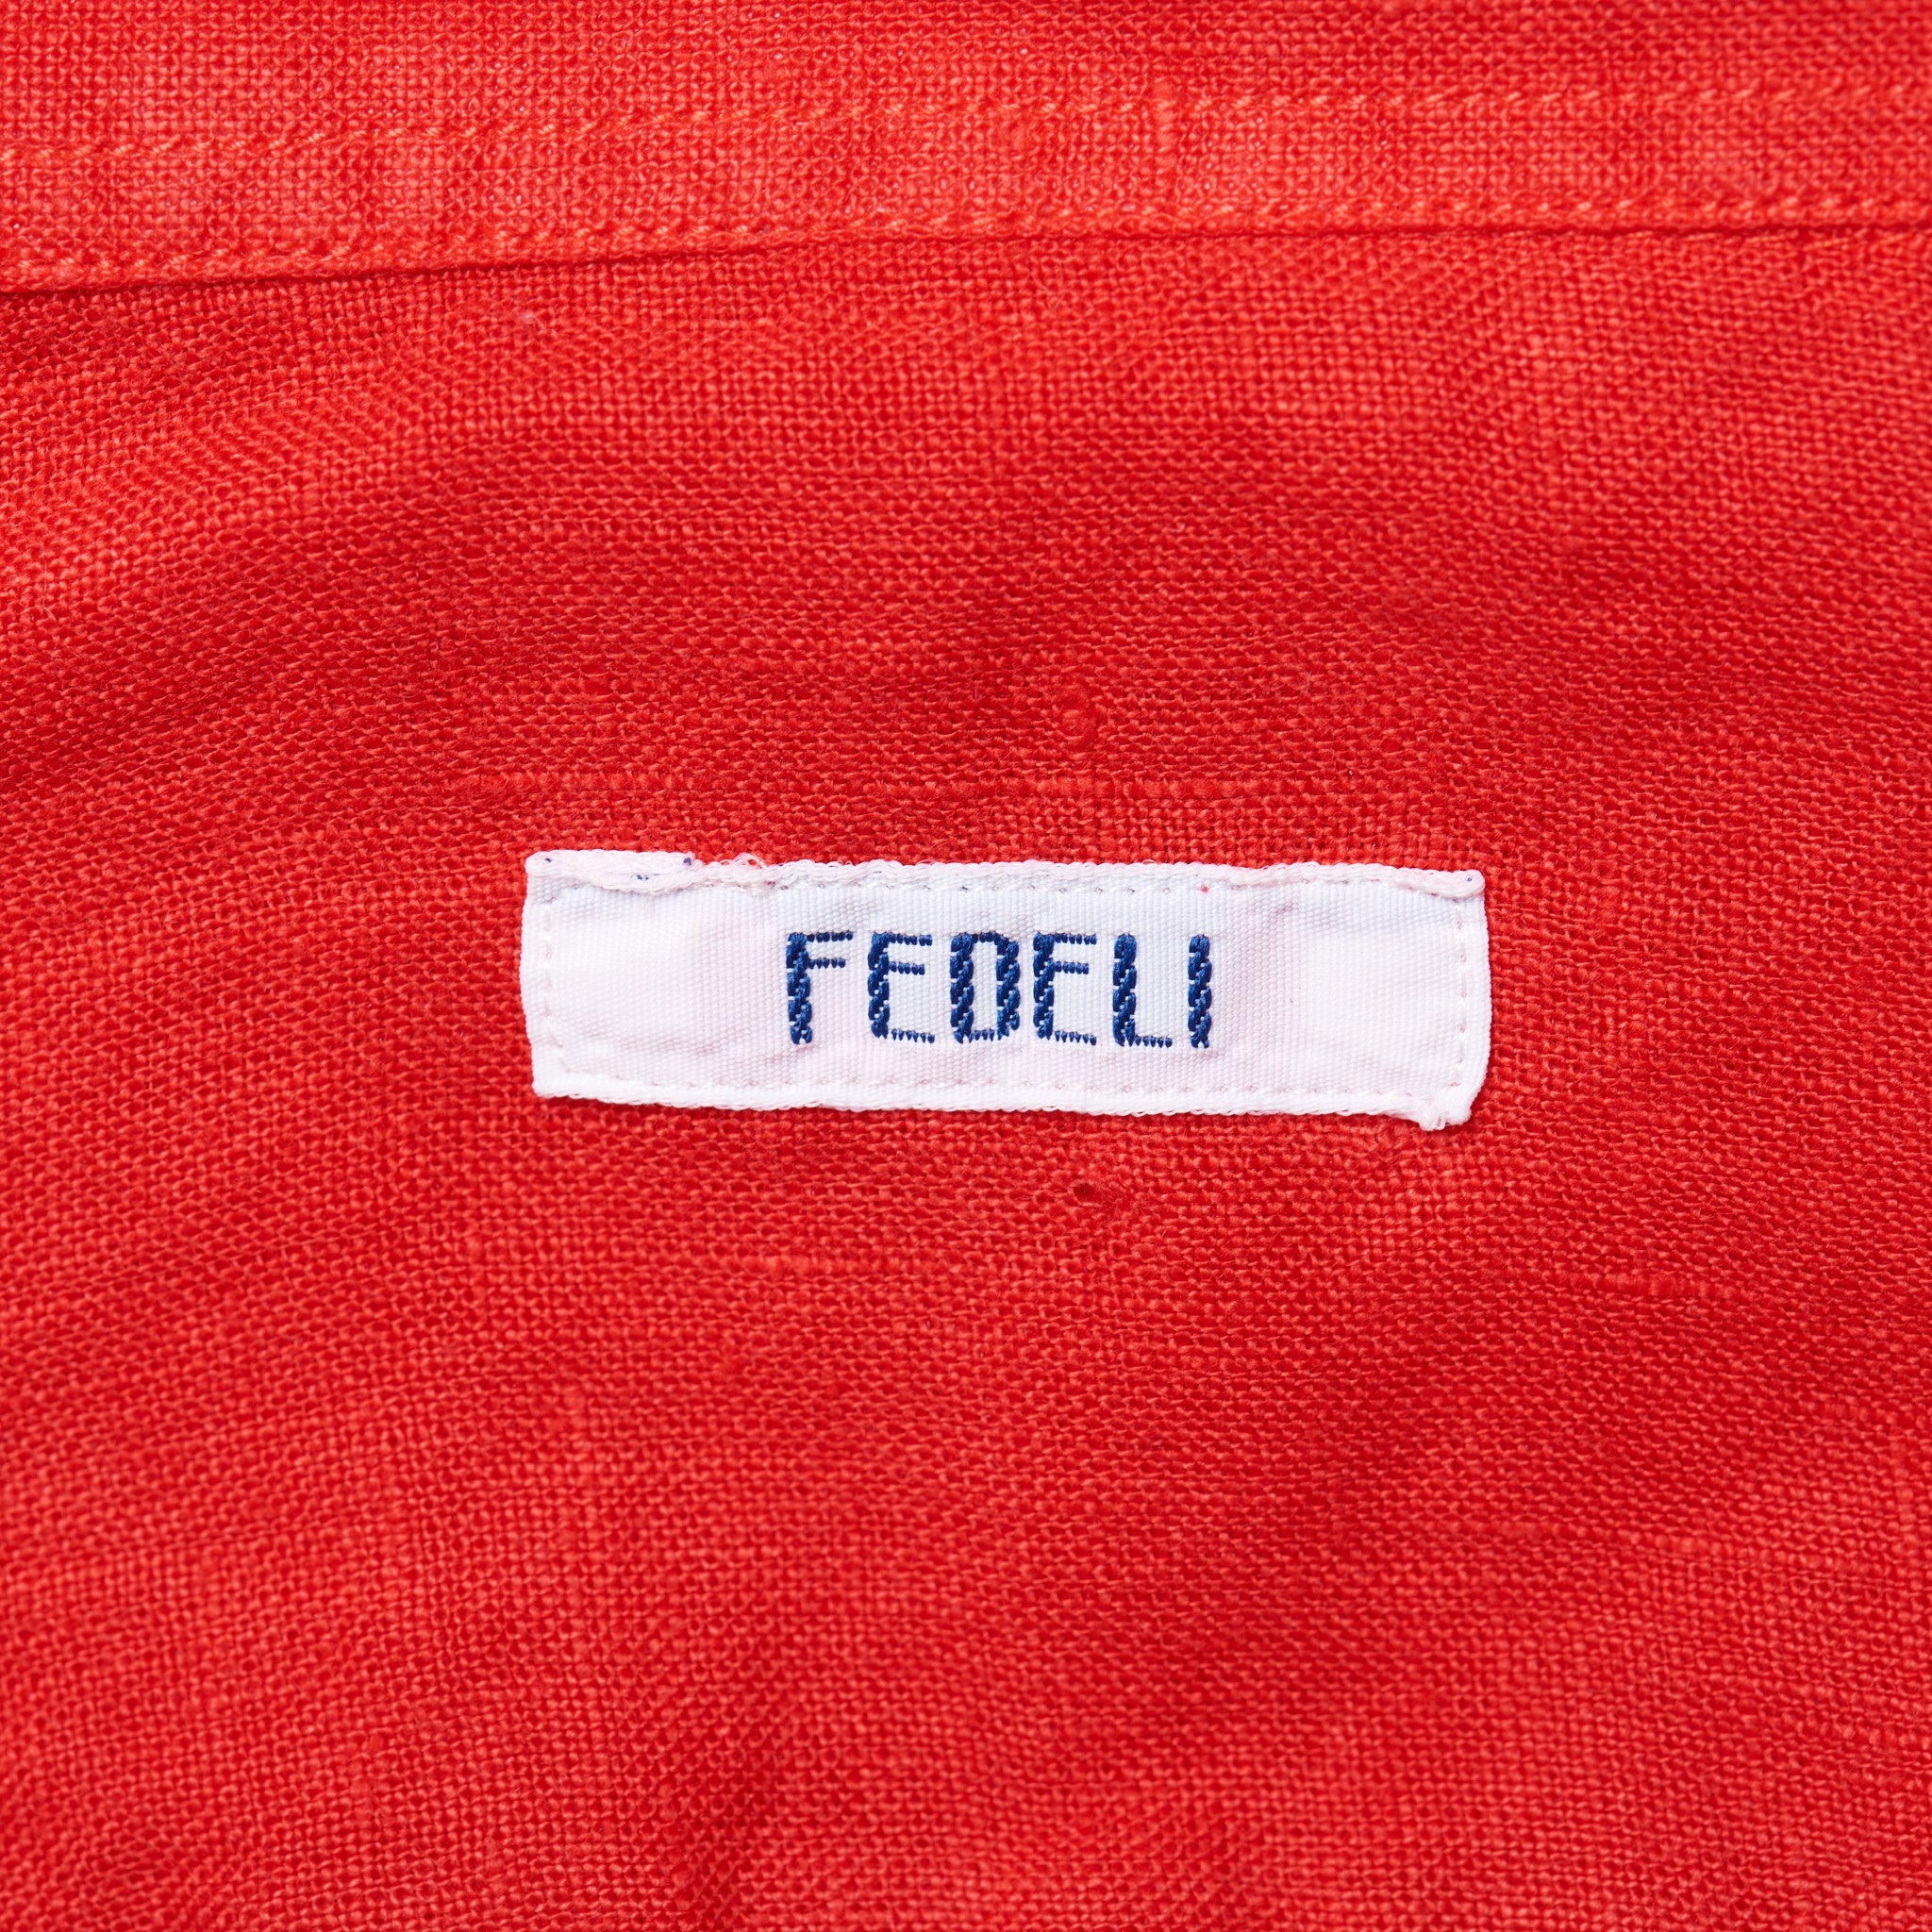 FEDELI Red Linen Long Sleeve Casual Shirt EU 42 NEW US 16.5 FEDELI